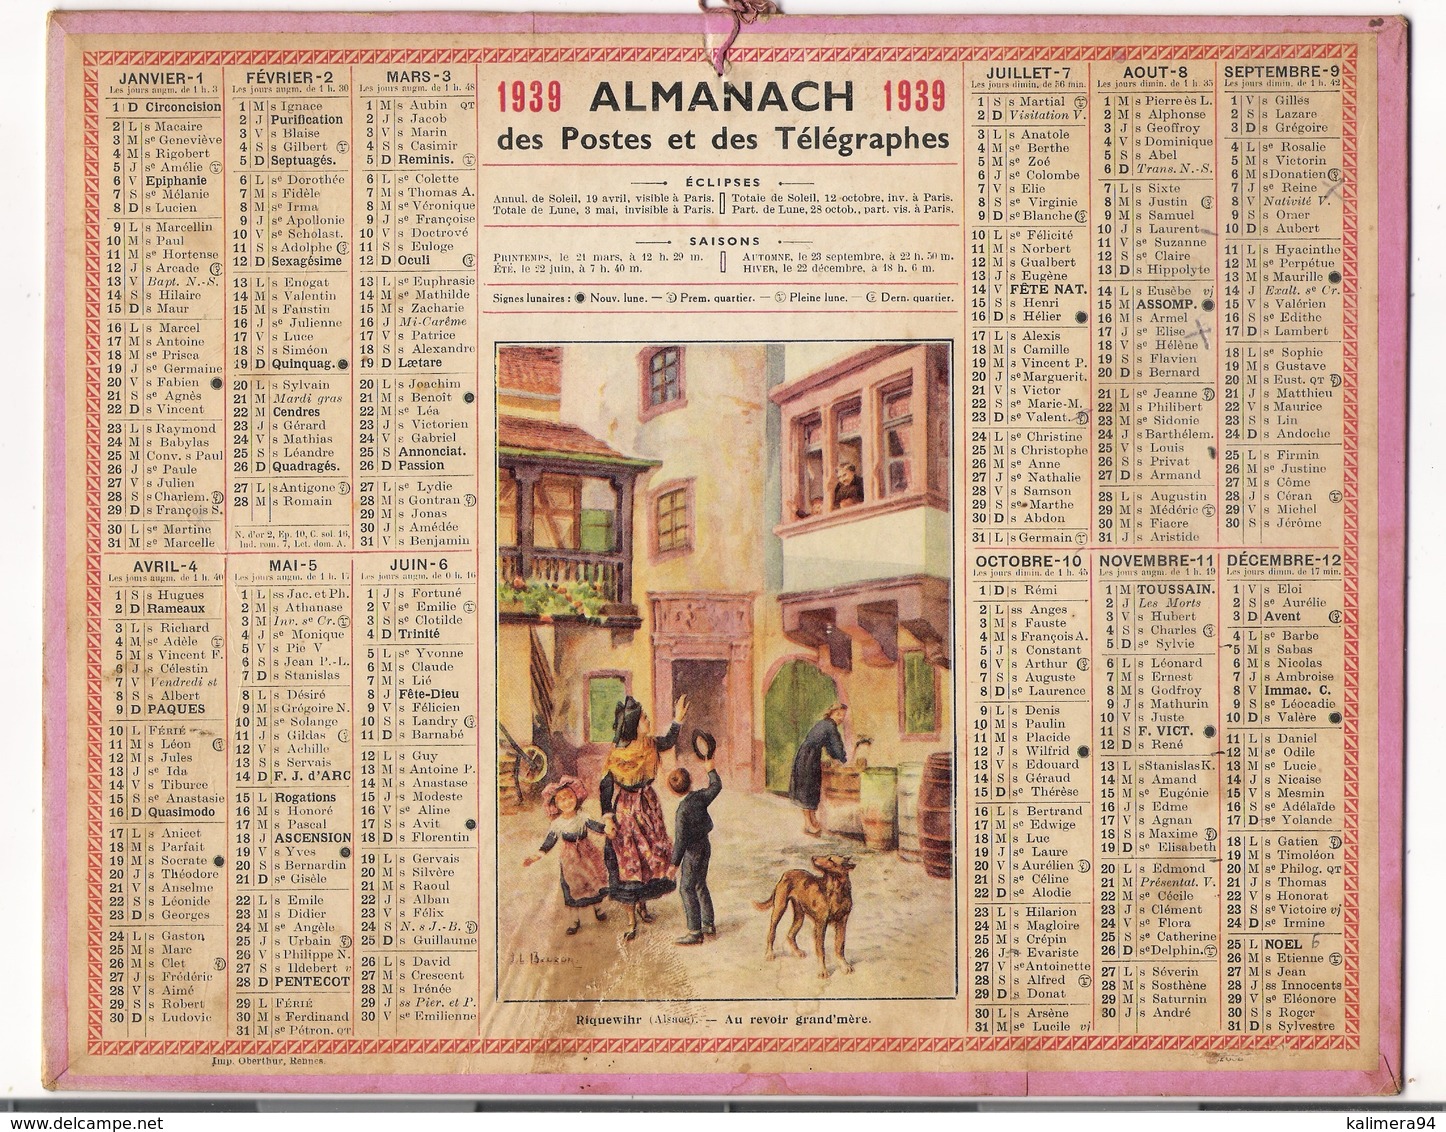 ALMANACH DES POSTES ET DES TELEGRAPHES / CALENDRIER DE 1939 / RIQUEWIRH / AU REVOIR GRAND' MÈRE / Dép. SEINE - Grossformat : 1921-40